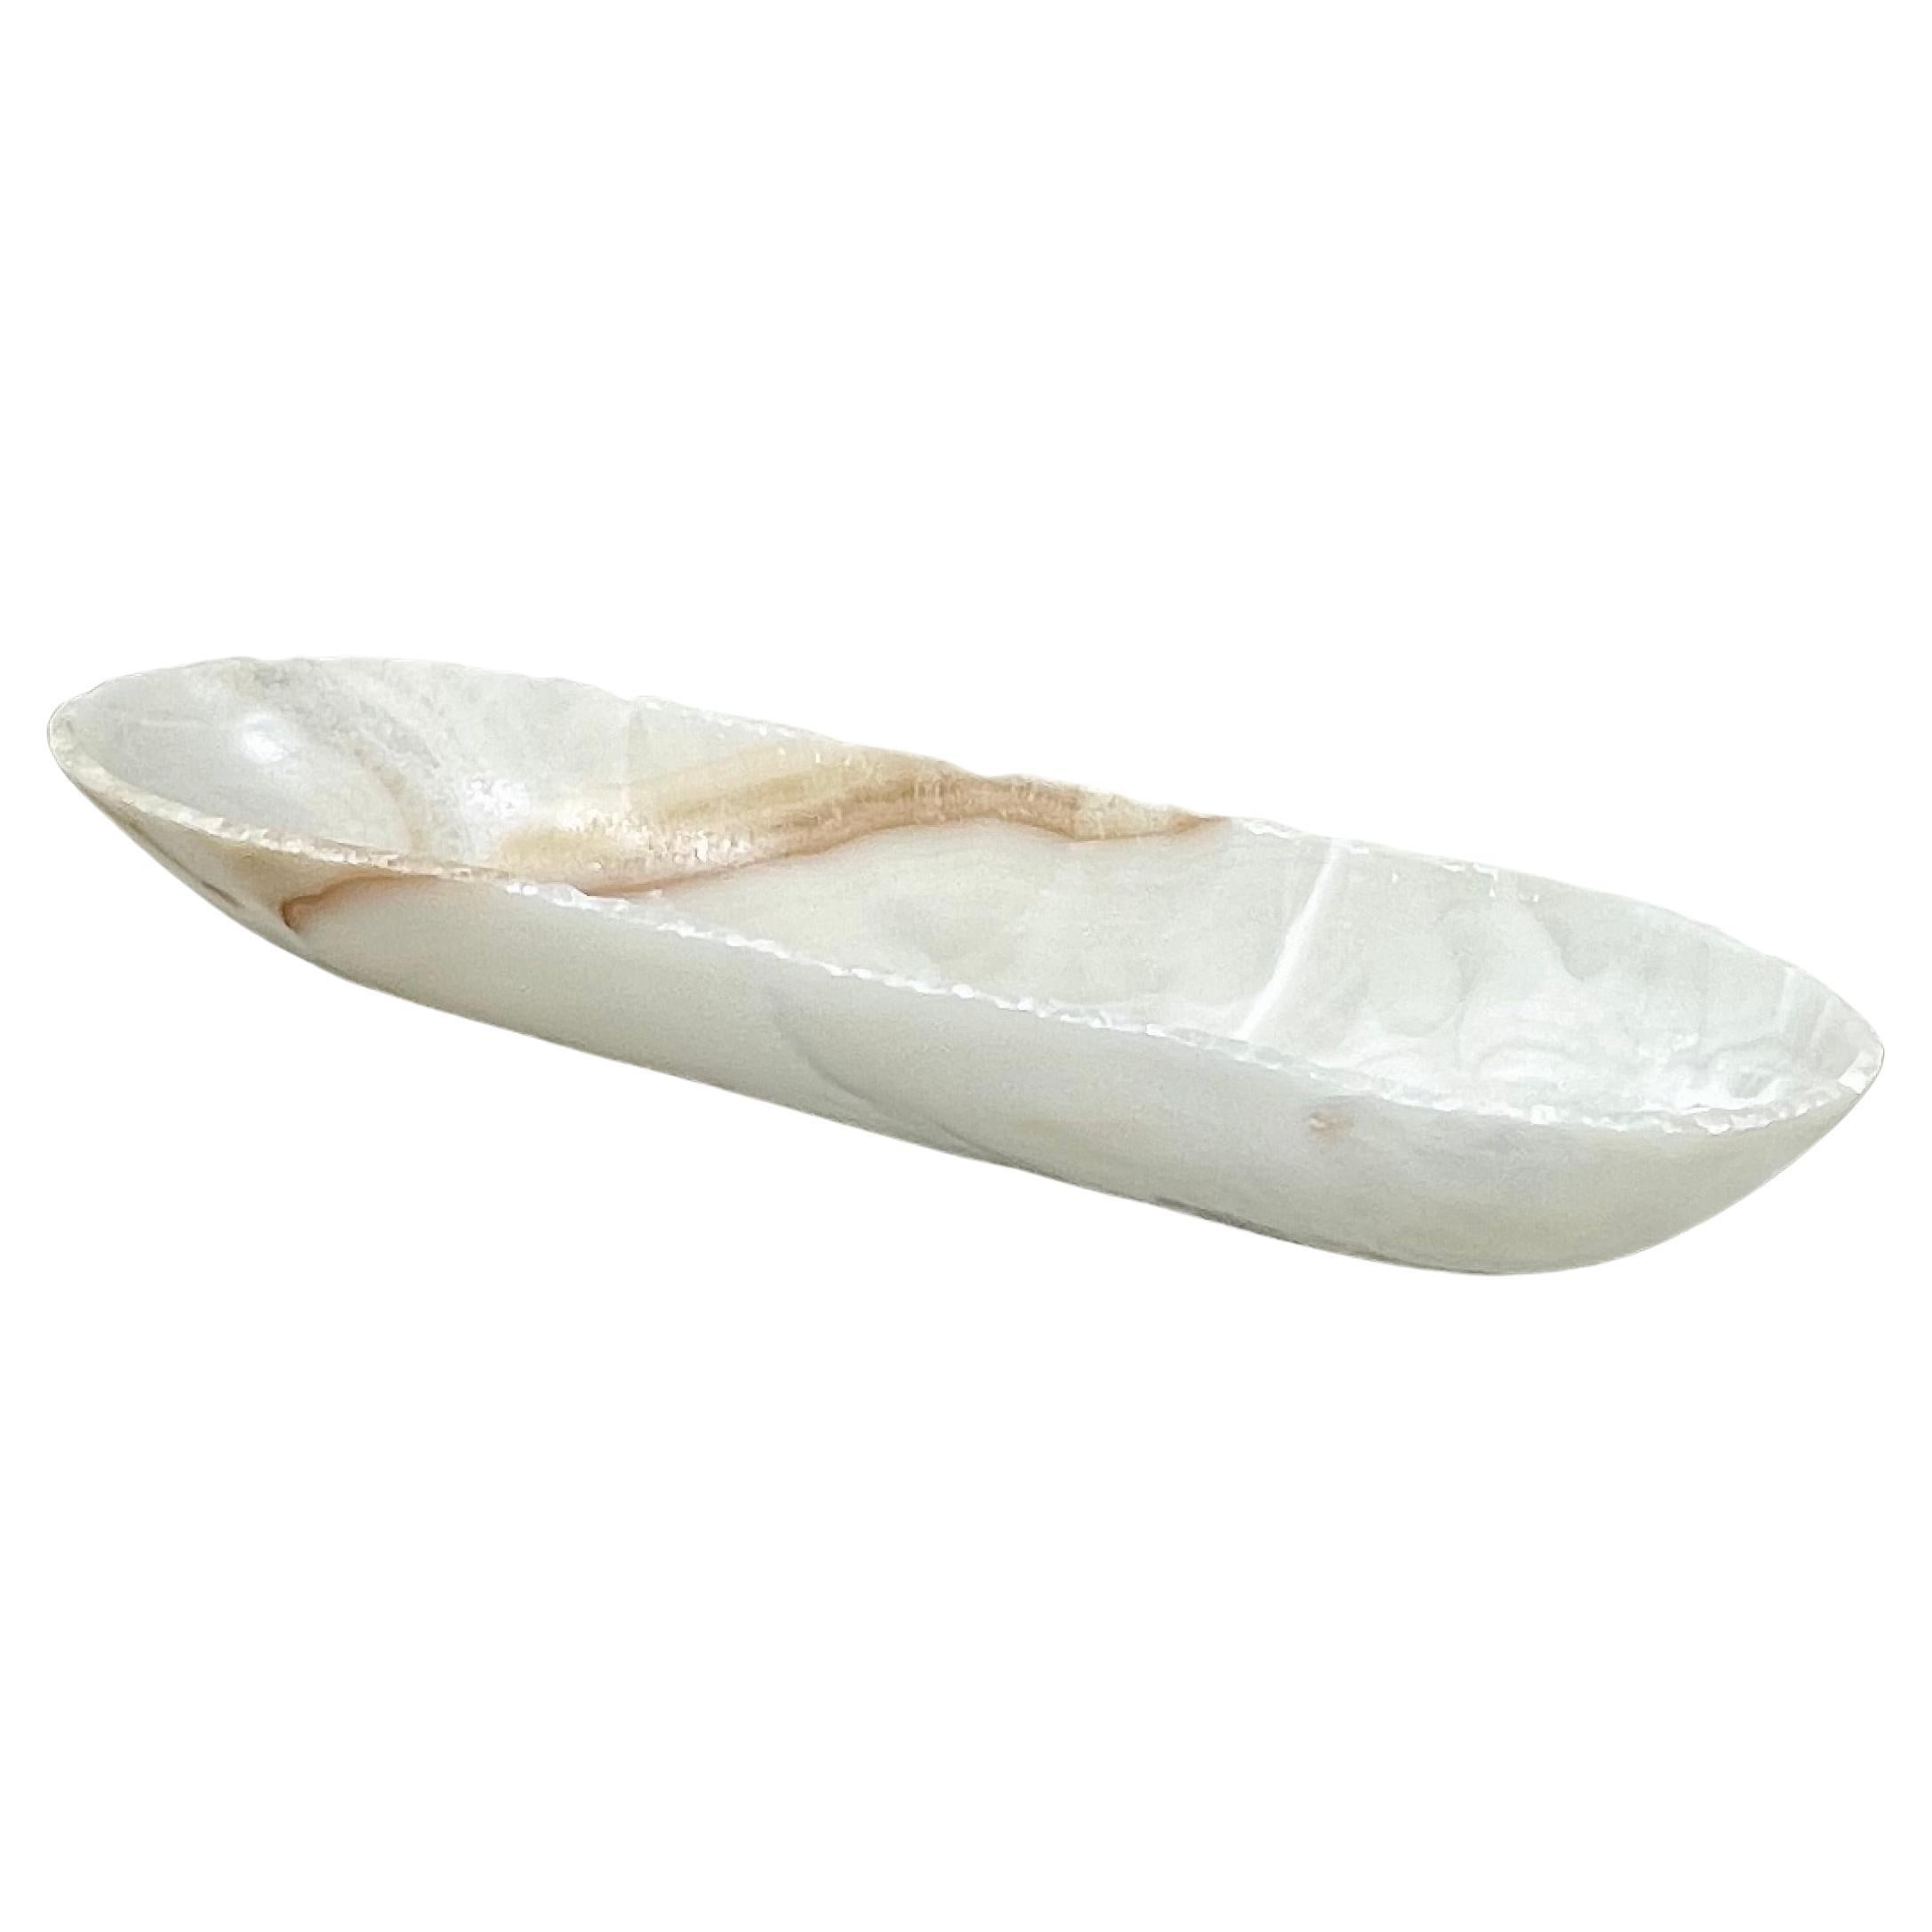 Canoe Shaped White Onyx Bowl with Veining